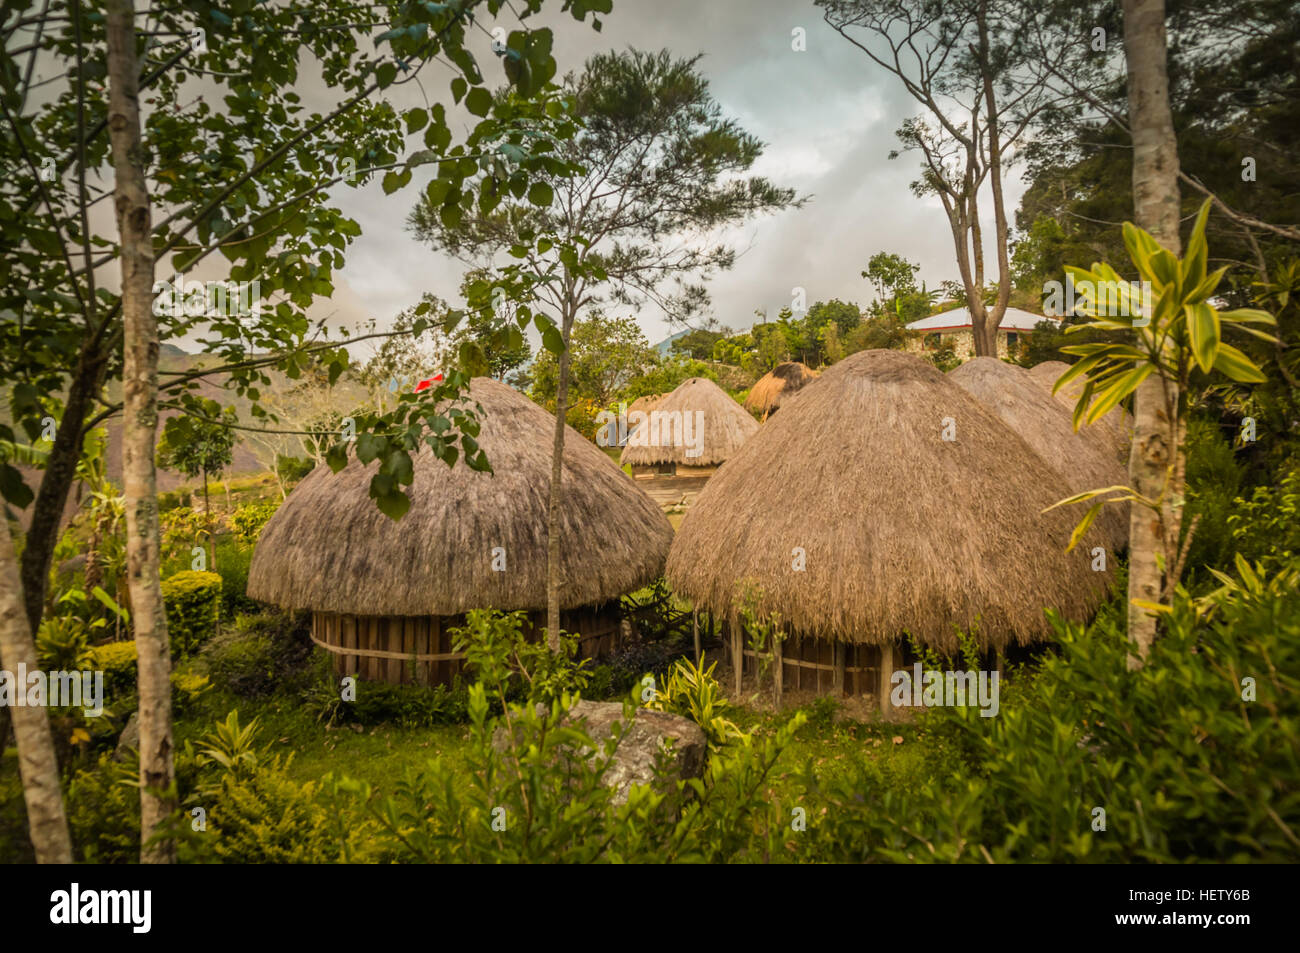 Maisons traditionnelles avec des toits de paille dans village de Dani à Wamena, Papouasie, Indonésie. Banque D'Images